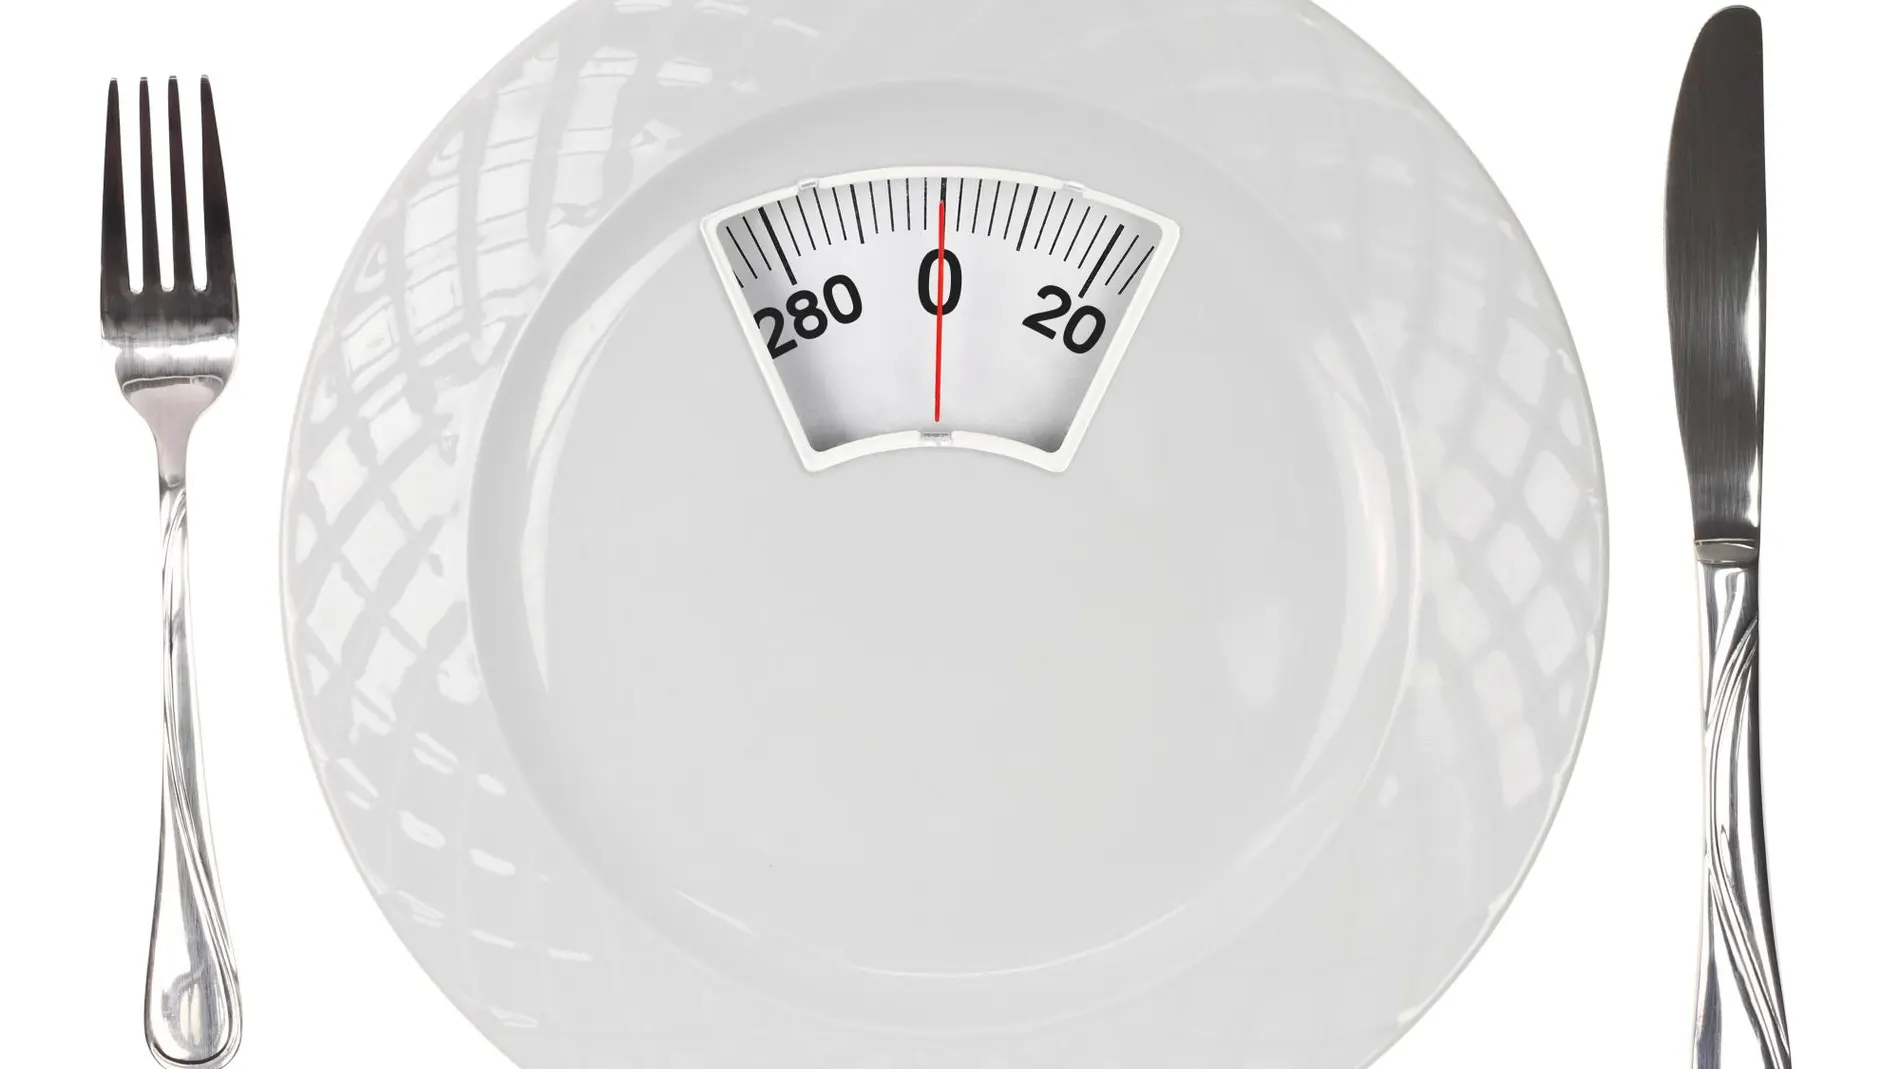 Perder kilos con una dieta milagro implica carencias nutricionales, efecto rebote y hasta problemas psicológicos